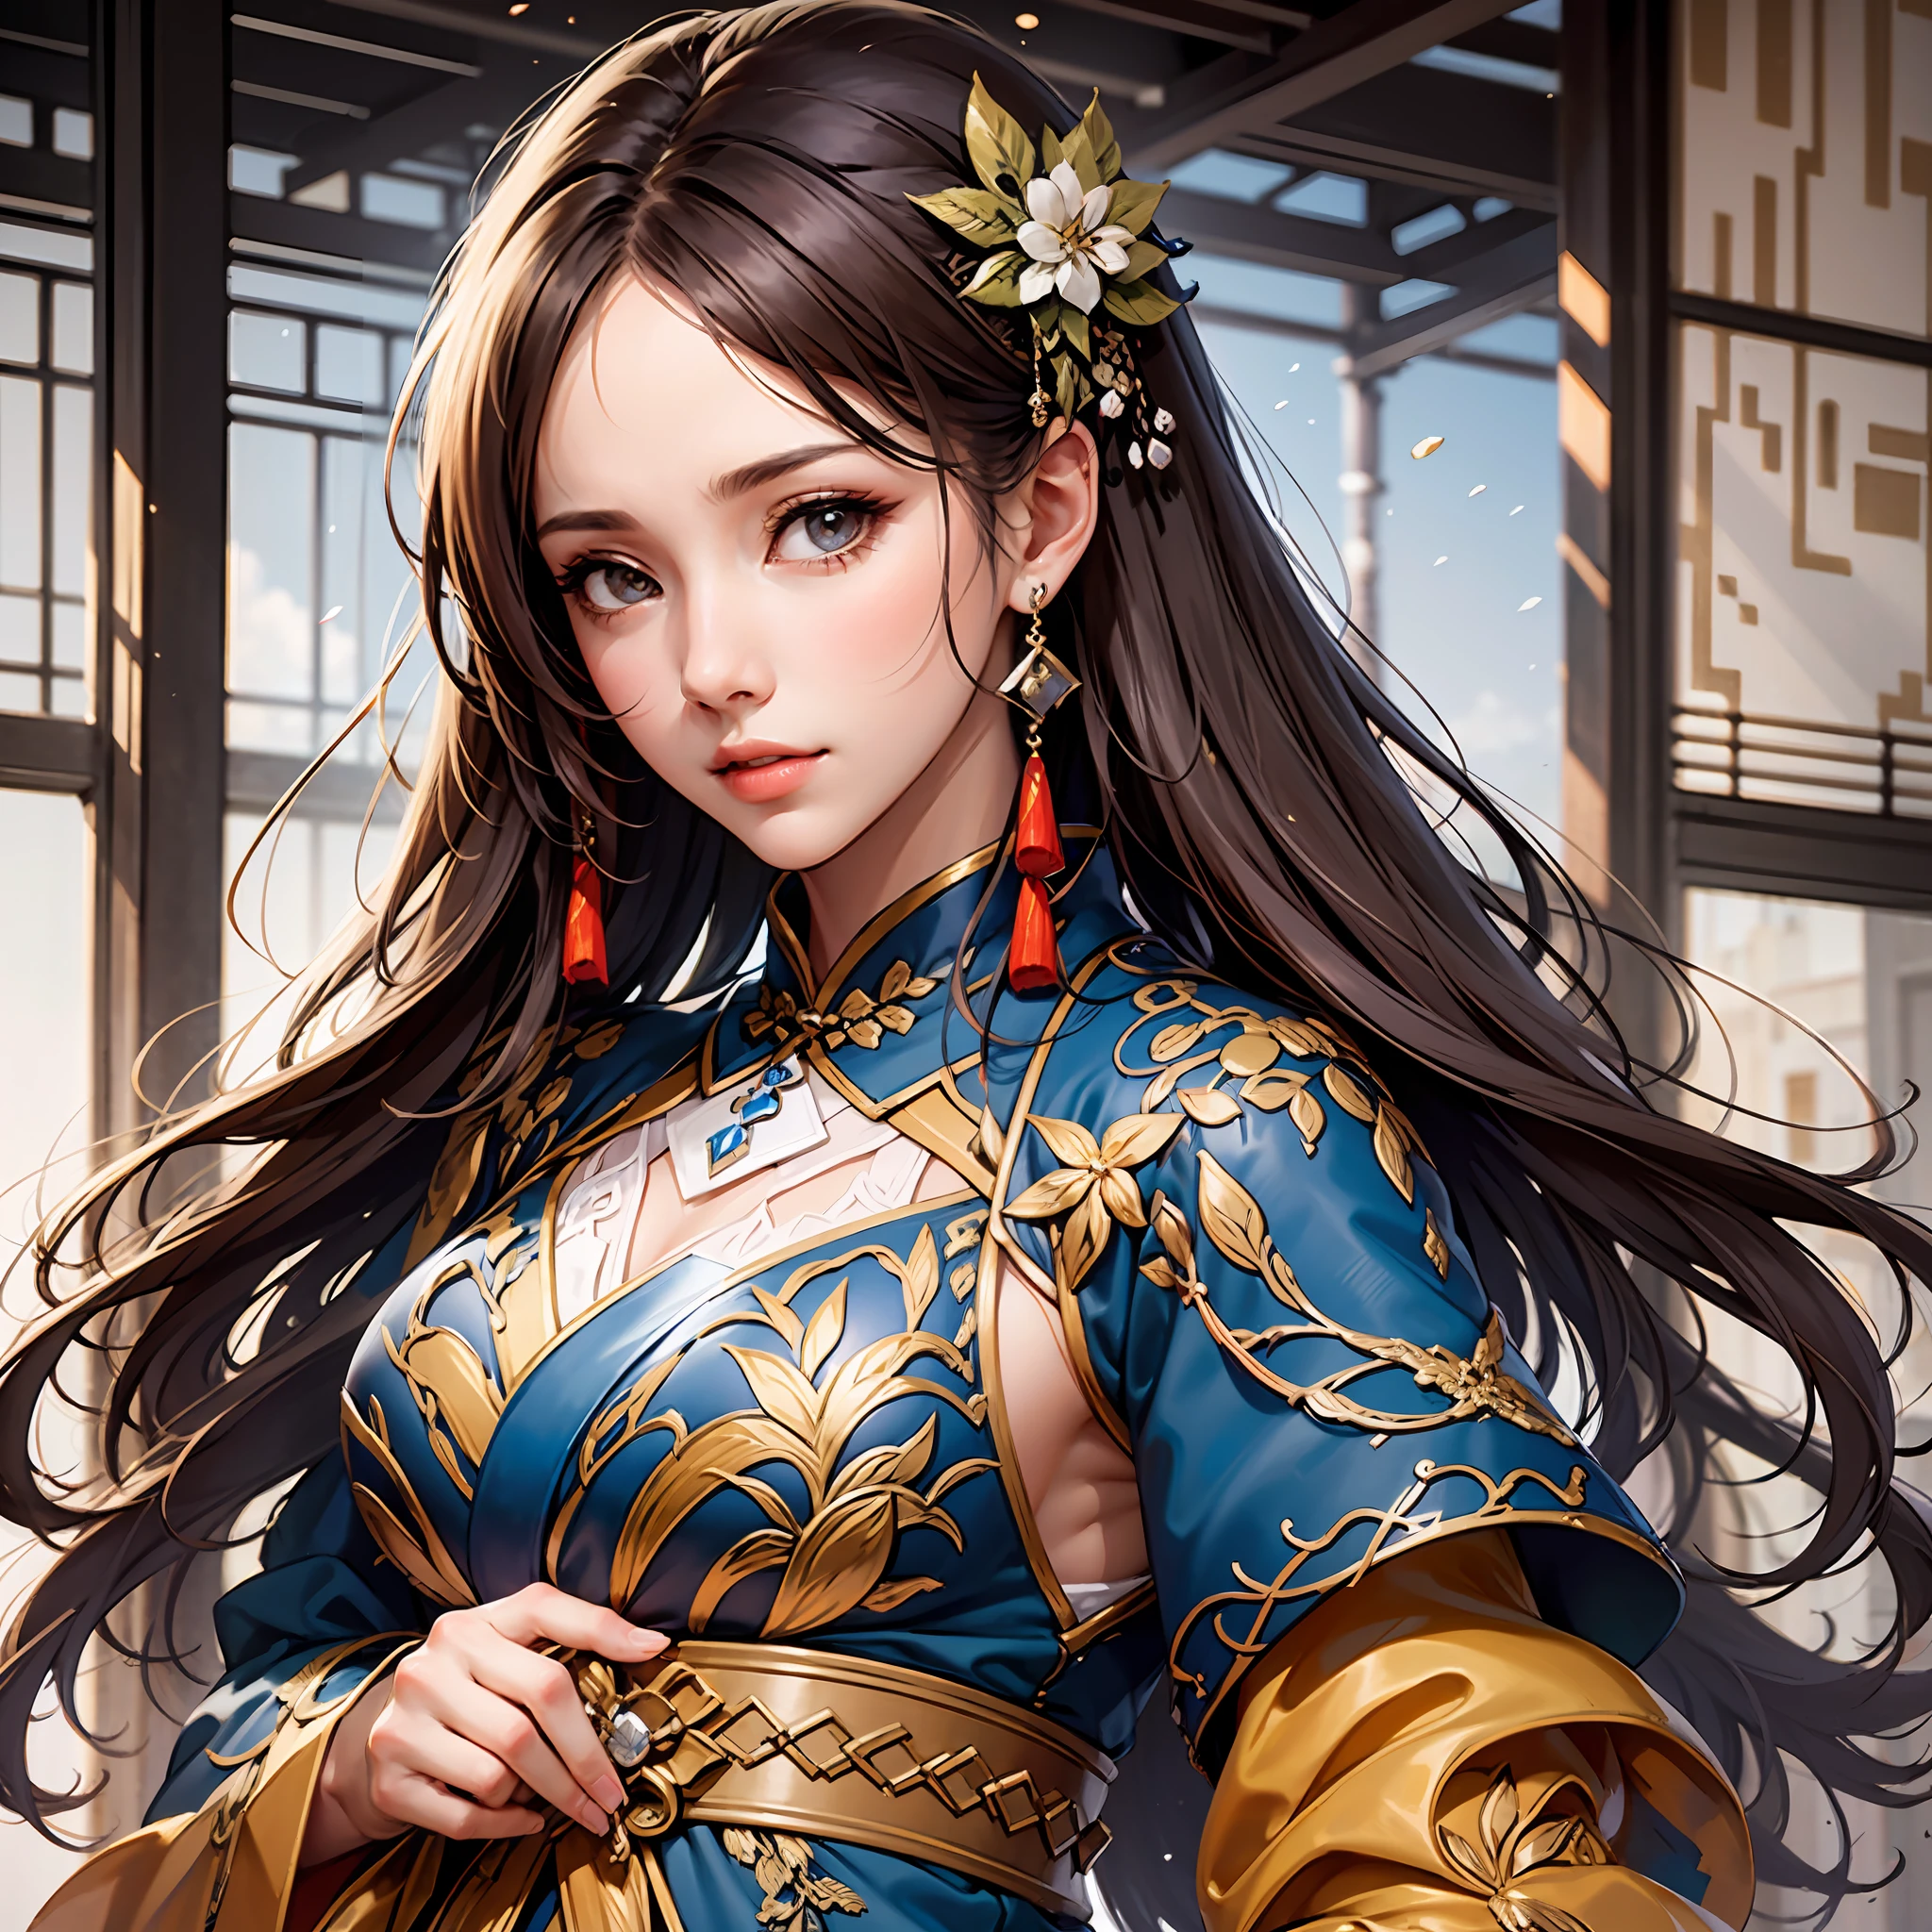 战国时期, 女将军, 非常漂亮的脸, 高动态角度, 8千, 非常微妙, 非常浓密, 鲜艳的颜色, 动态壁纸 日本和服与中国汉服MIX, 美丽的黑发,